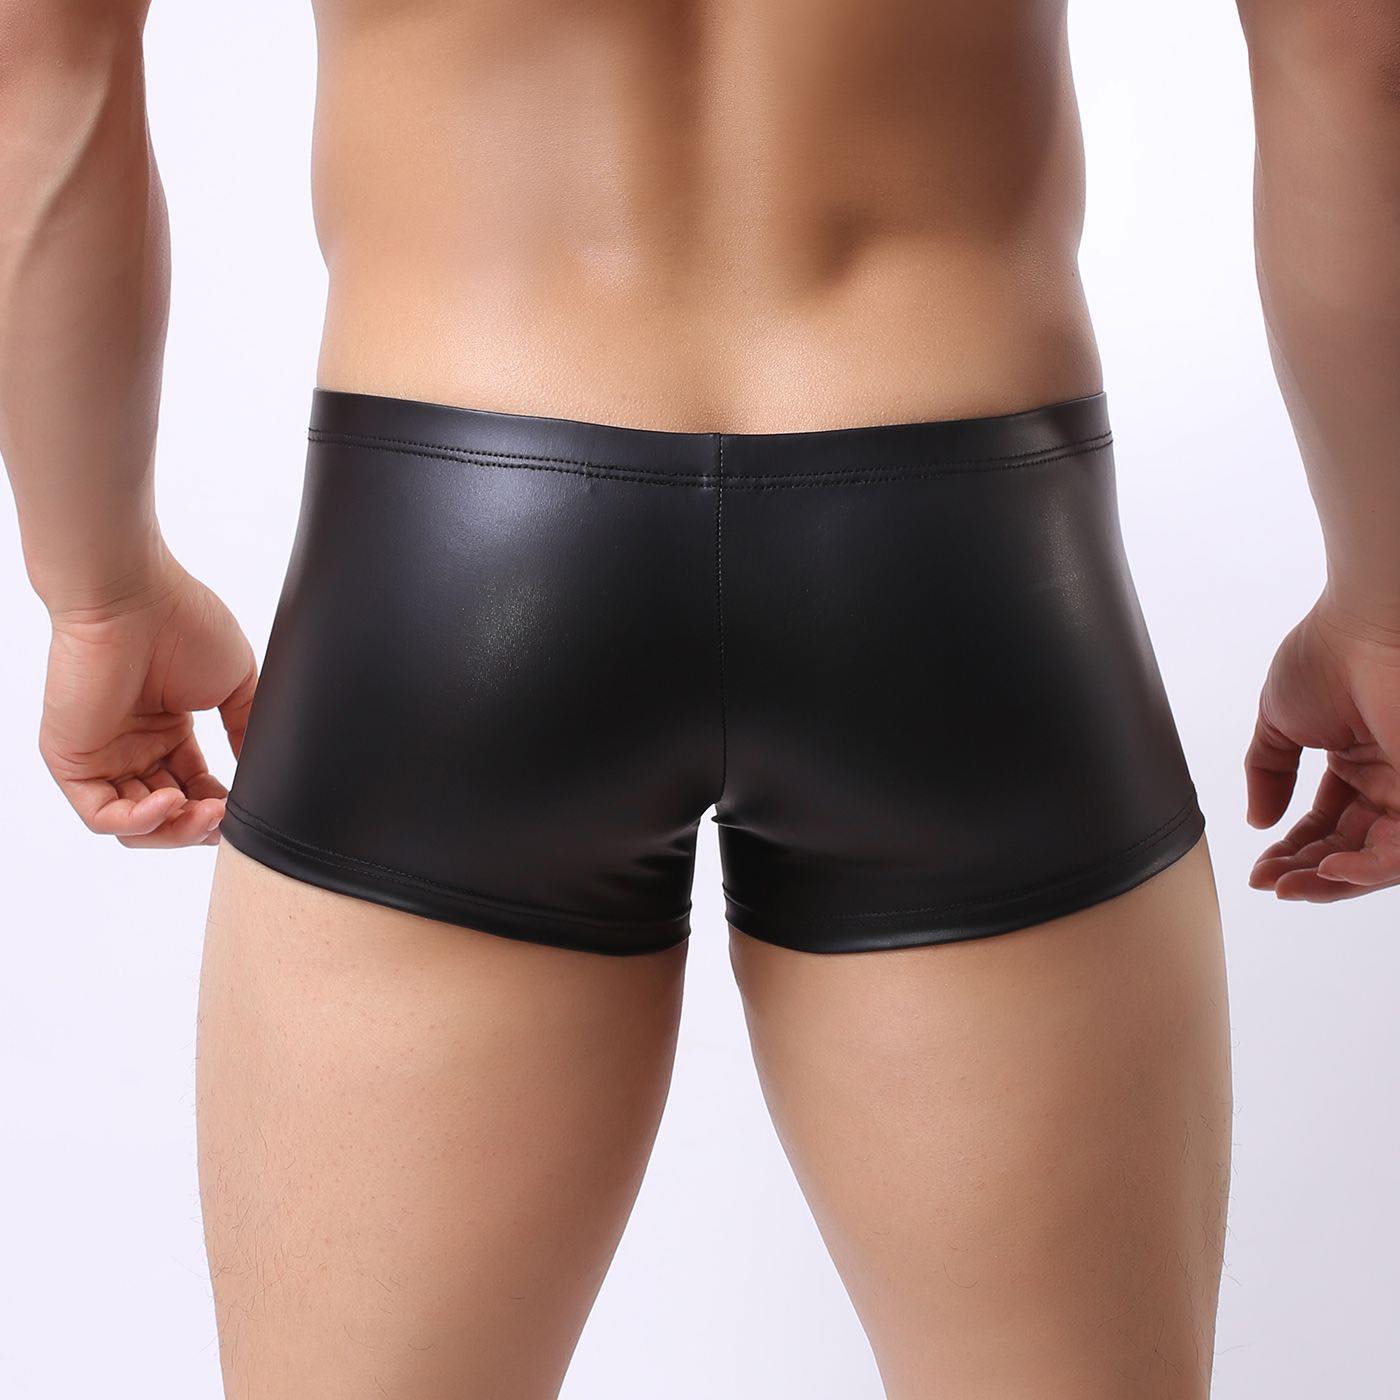 Gummi shorts, trunks eller boxers